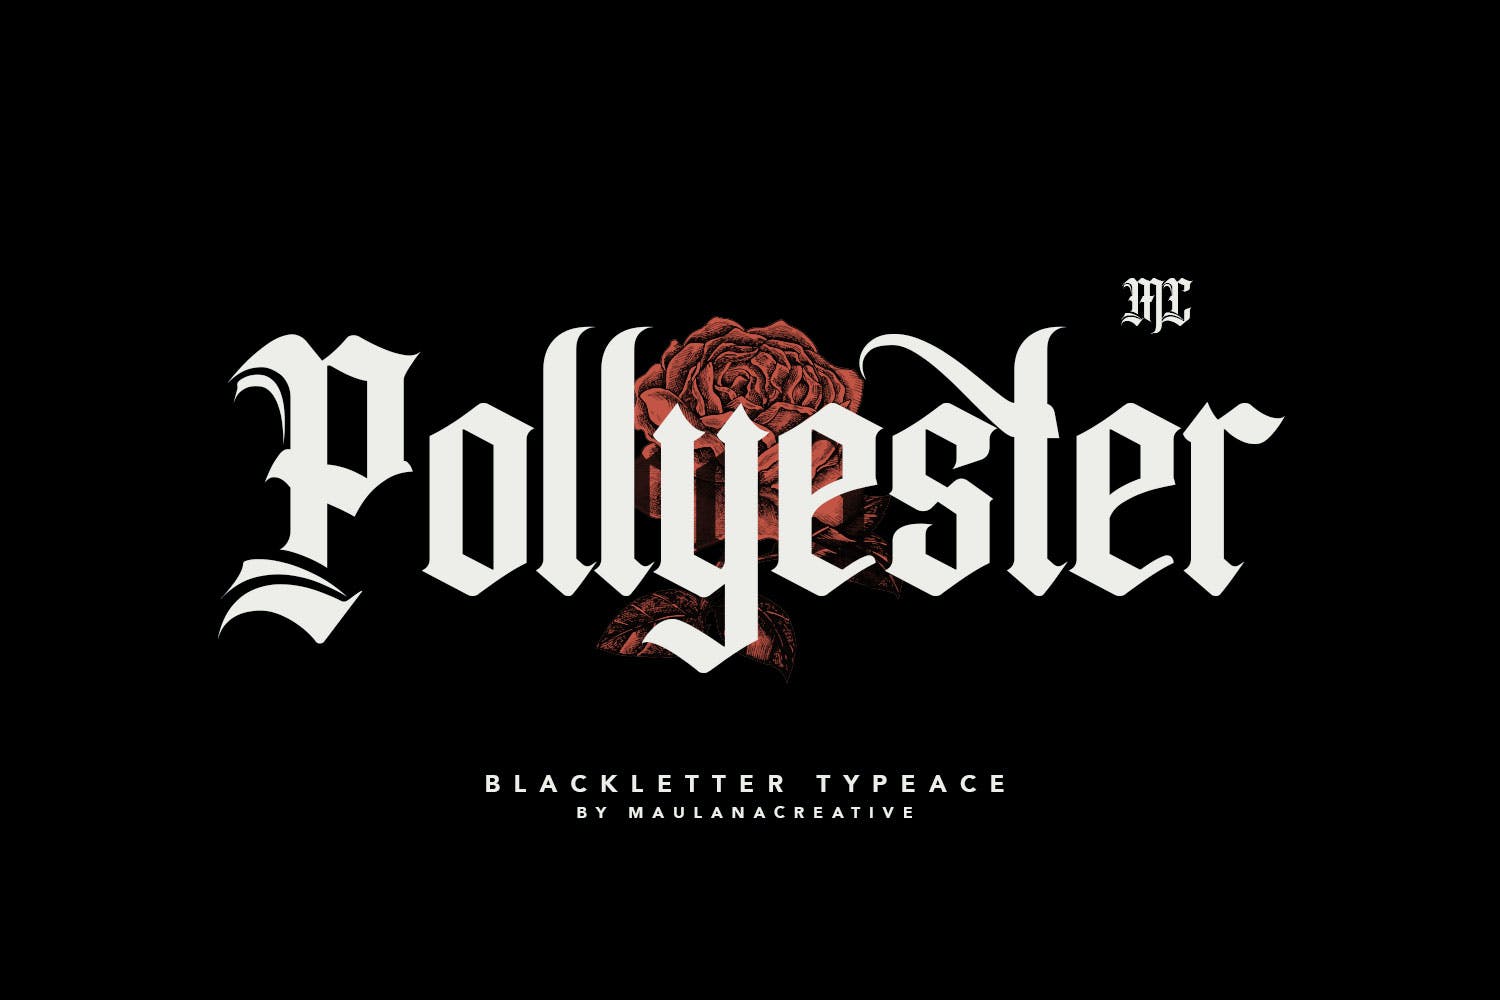 Pollyester - Font Timel Blackletter